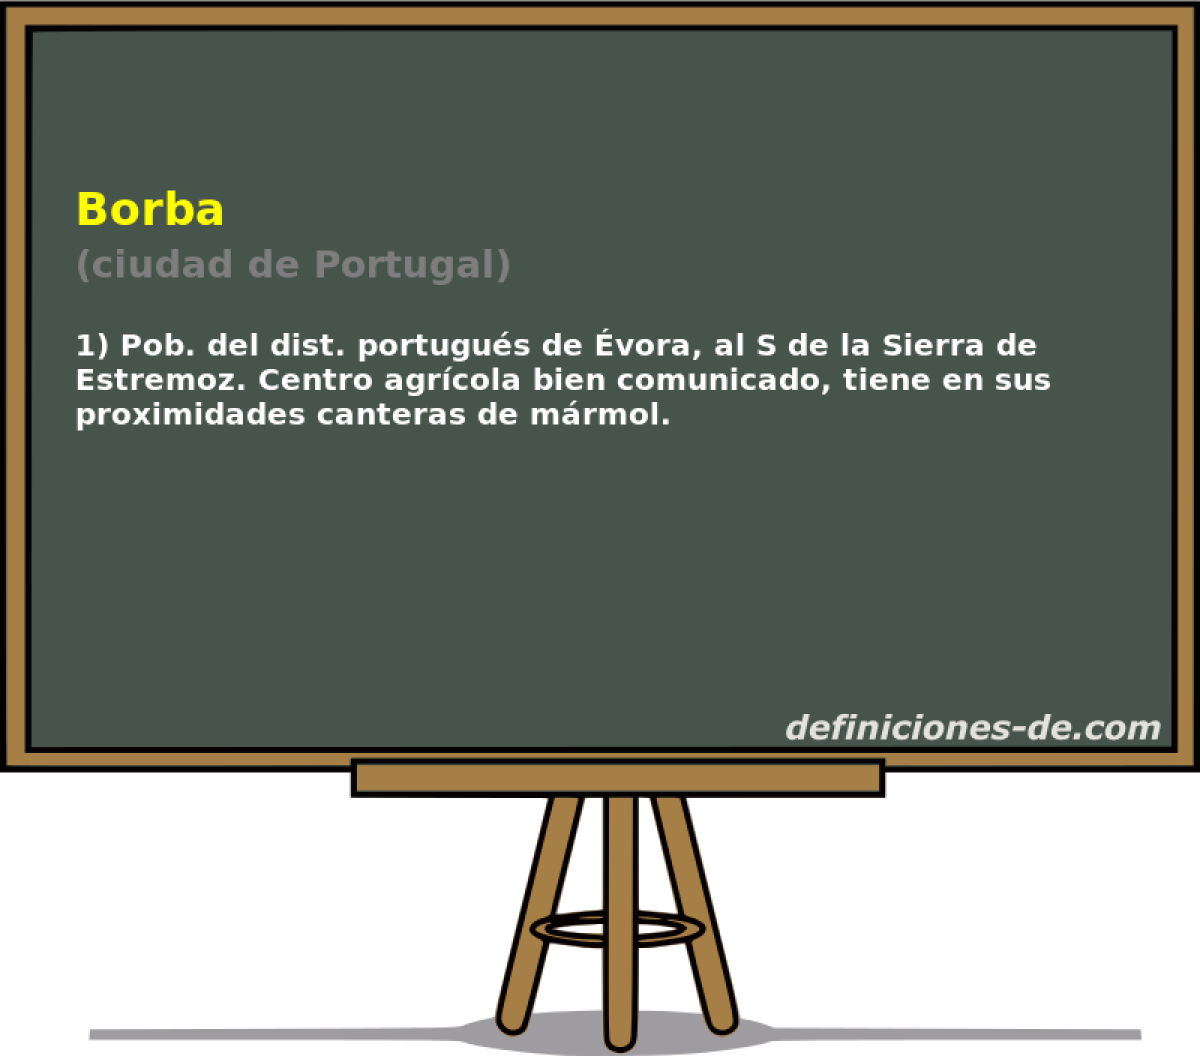 Borba (ciudad de Portugal)